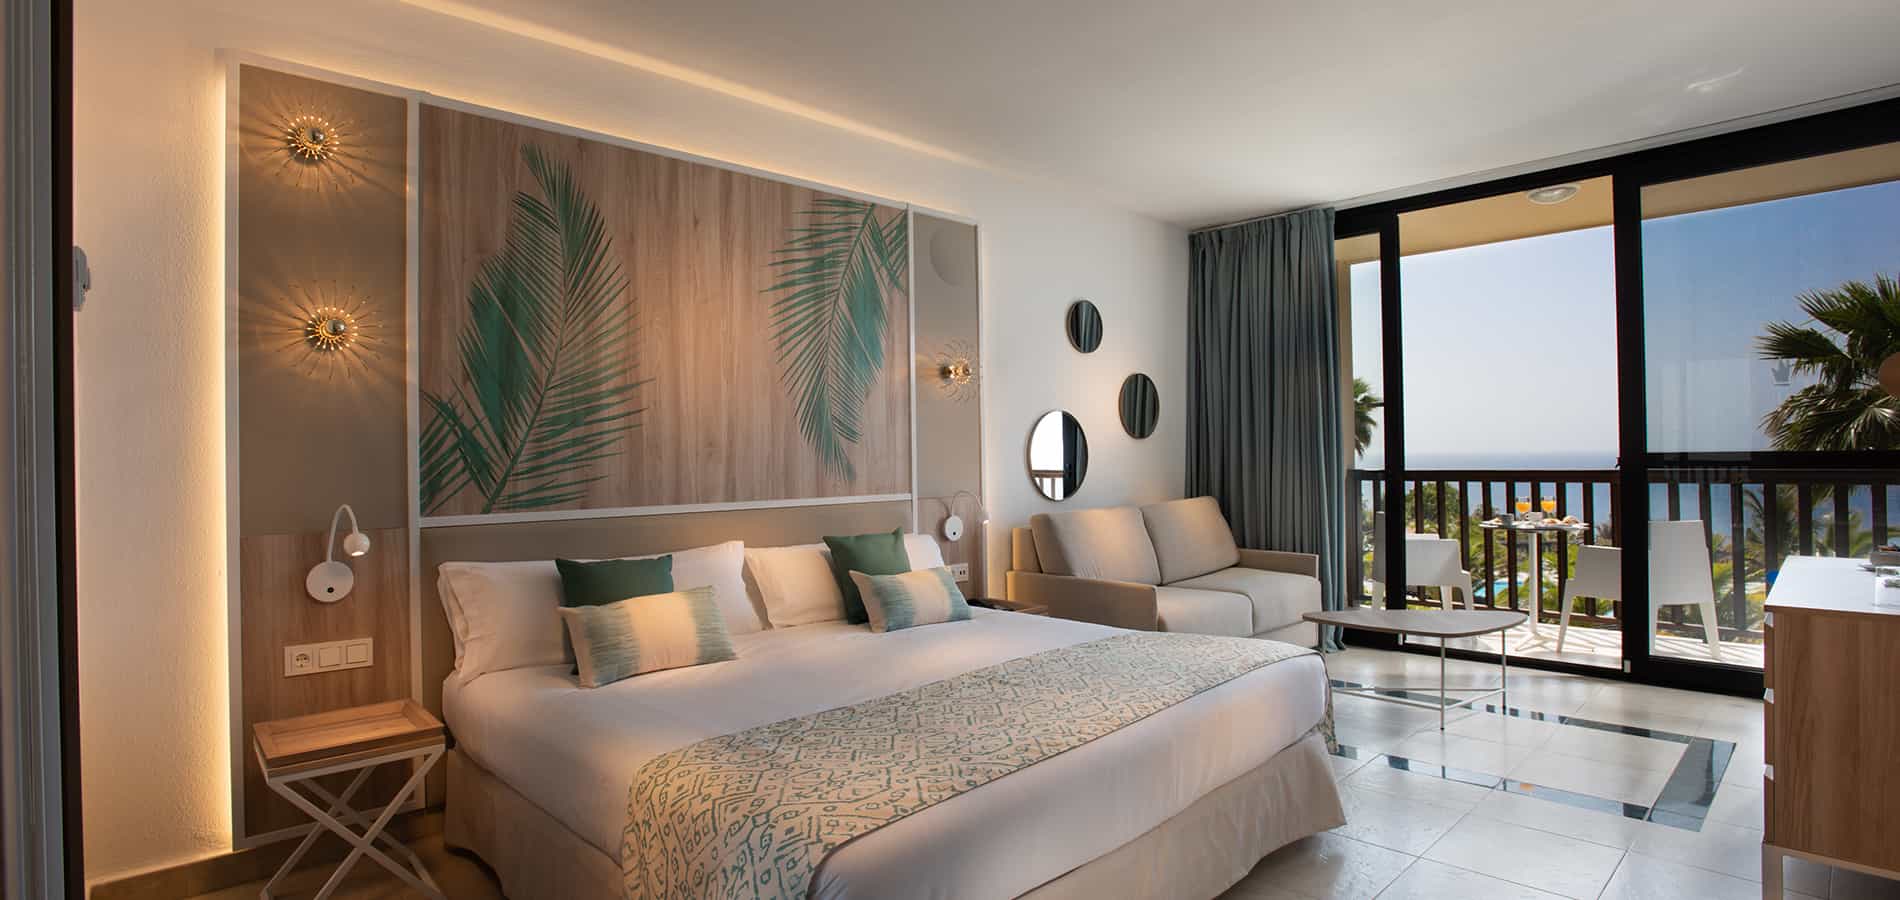 Rooms at Esencia de La Palma